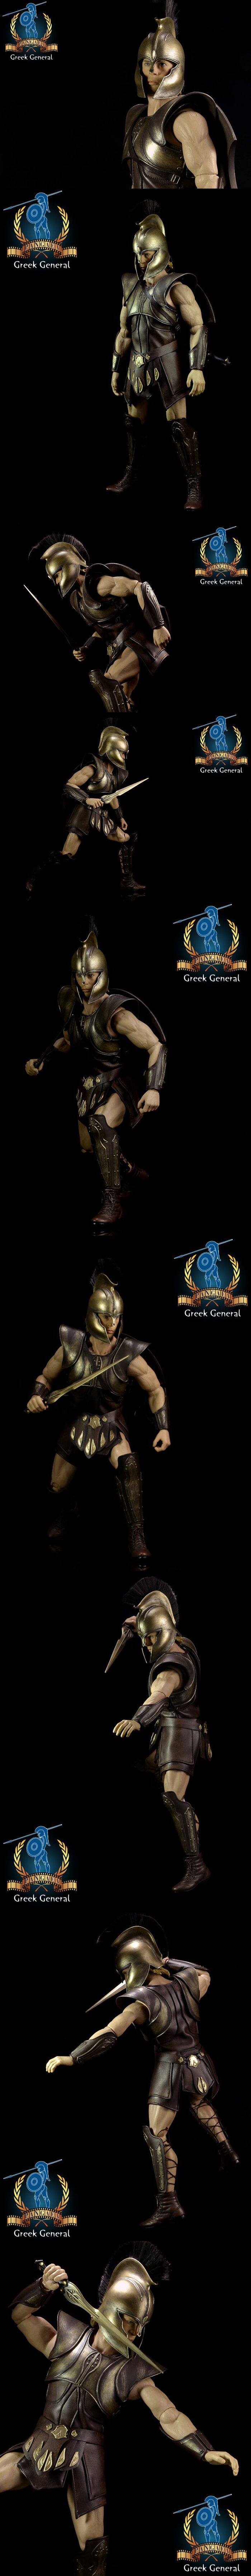 [PANGAEA] Greek General